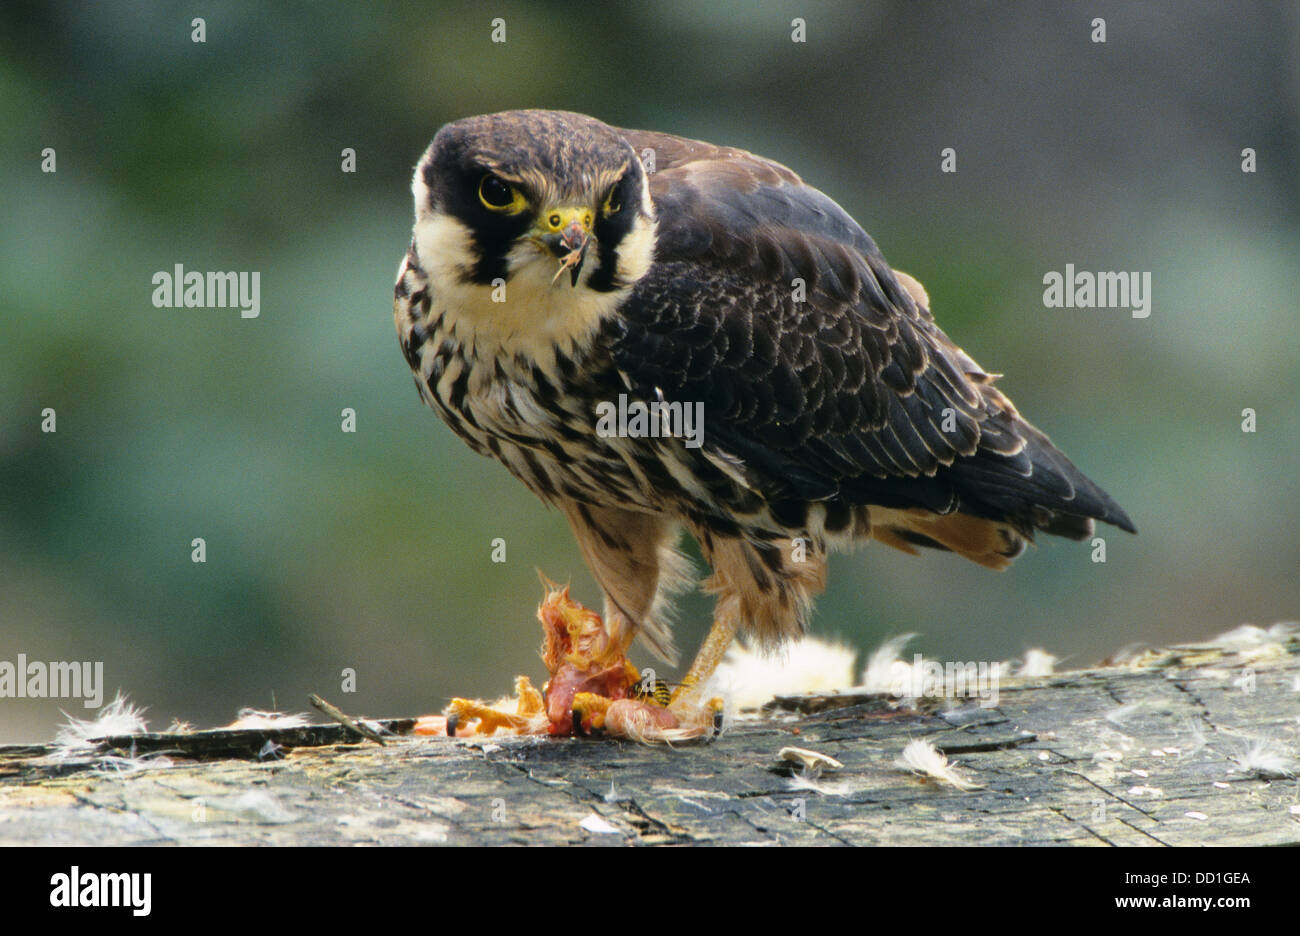 Norte de hobby, Falcon, Baumfalke, mit Beute, rupft erbeuteten Kleinvogel, Baum-Falke, Falke, Falco Subbuteo Foto de stock